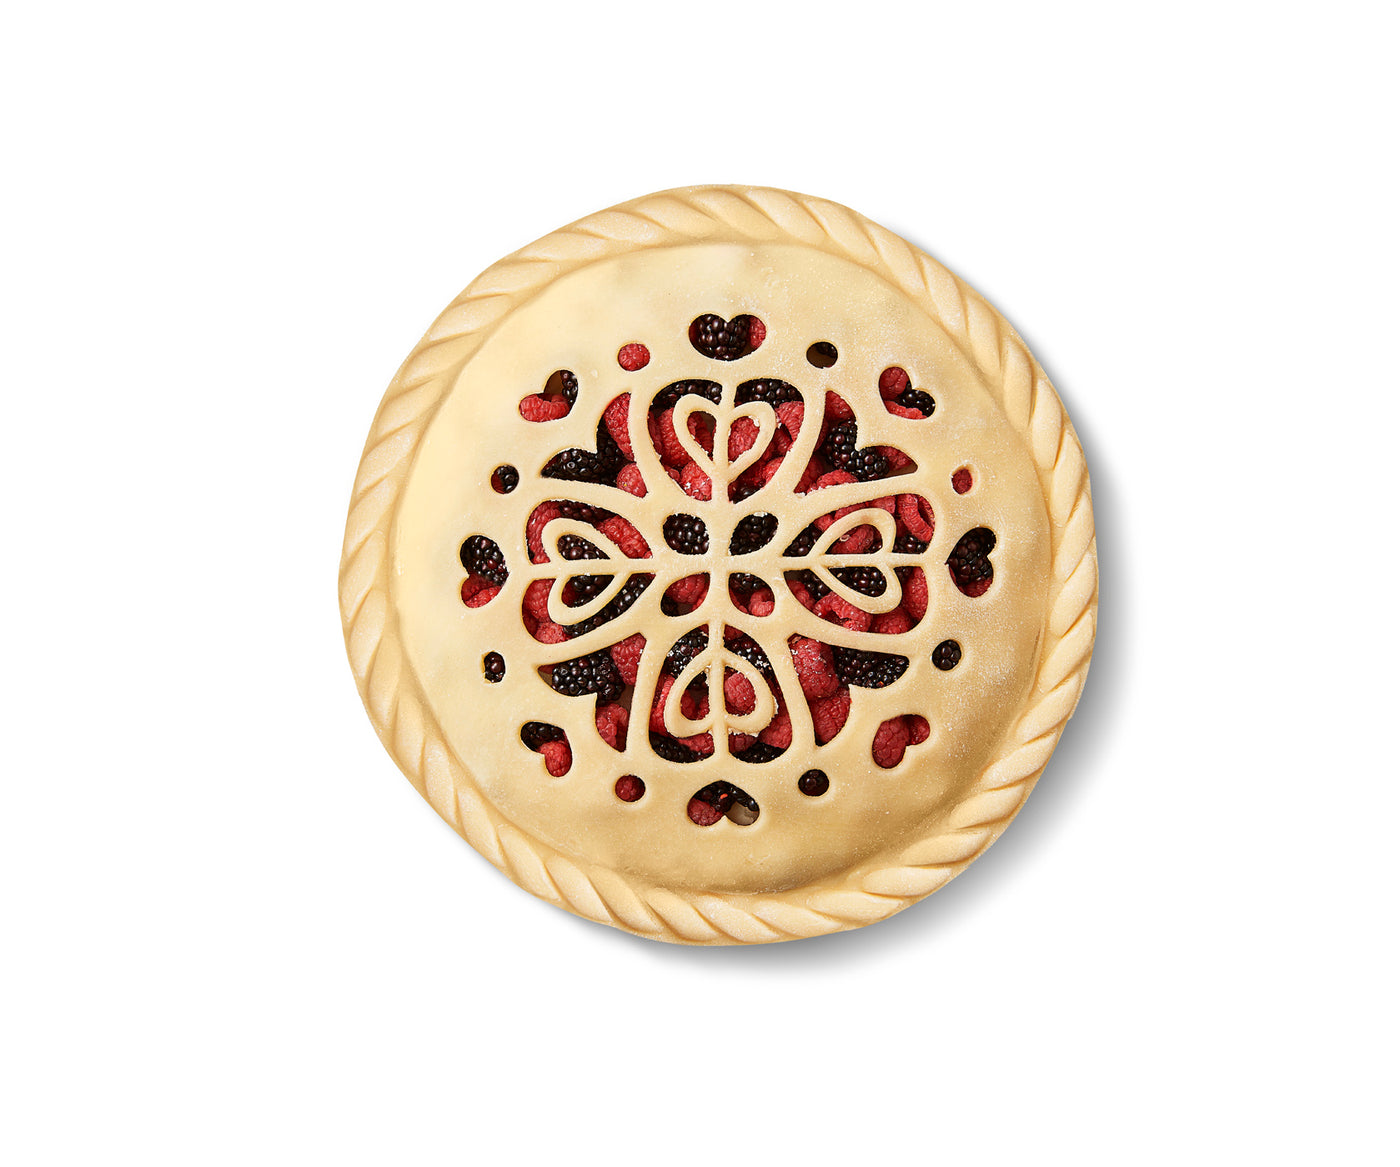 Pie Crust Cutters - Occasions – Talisman Designs